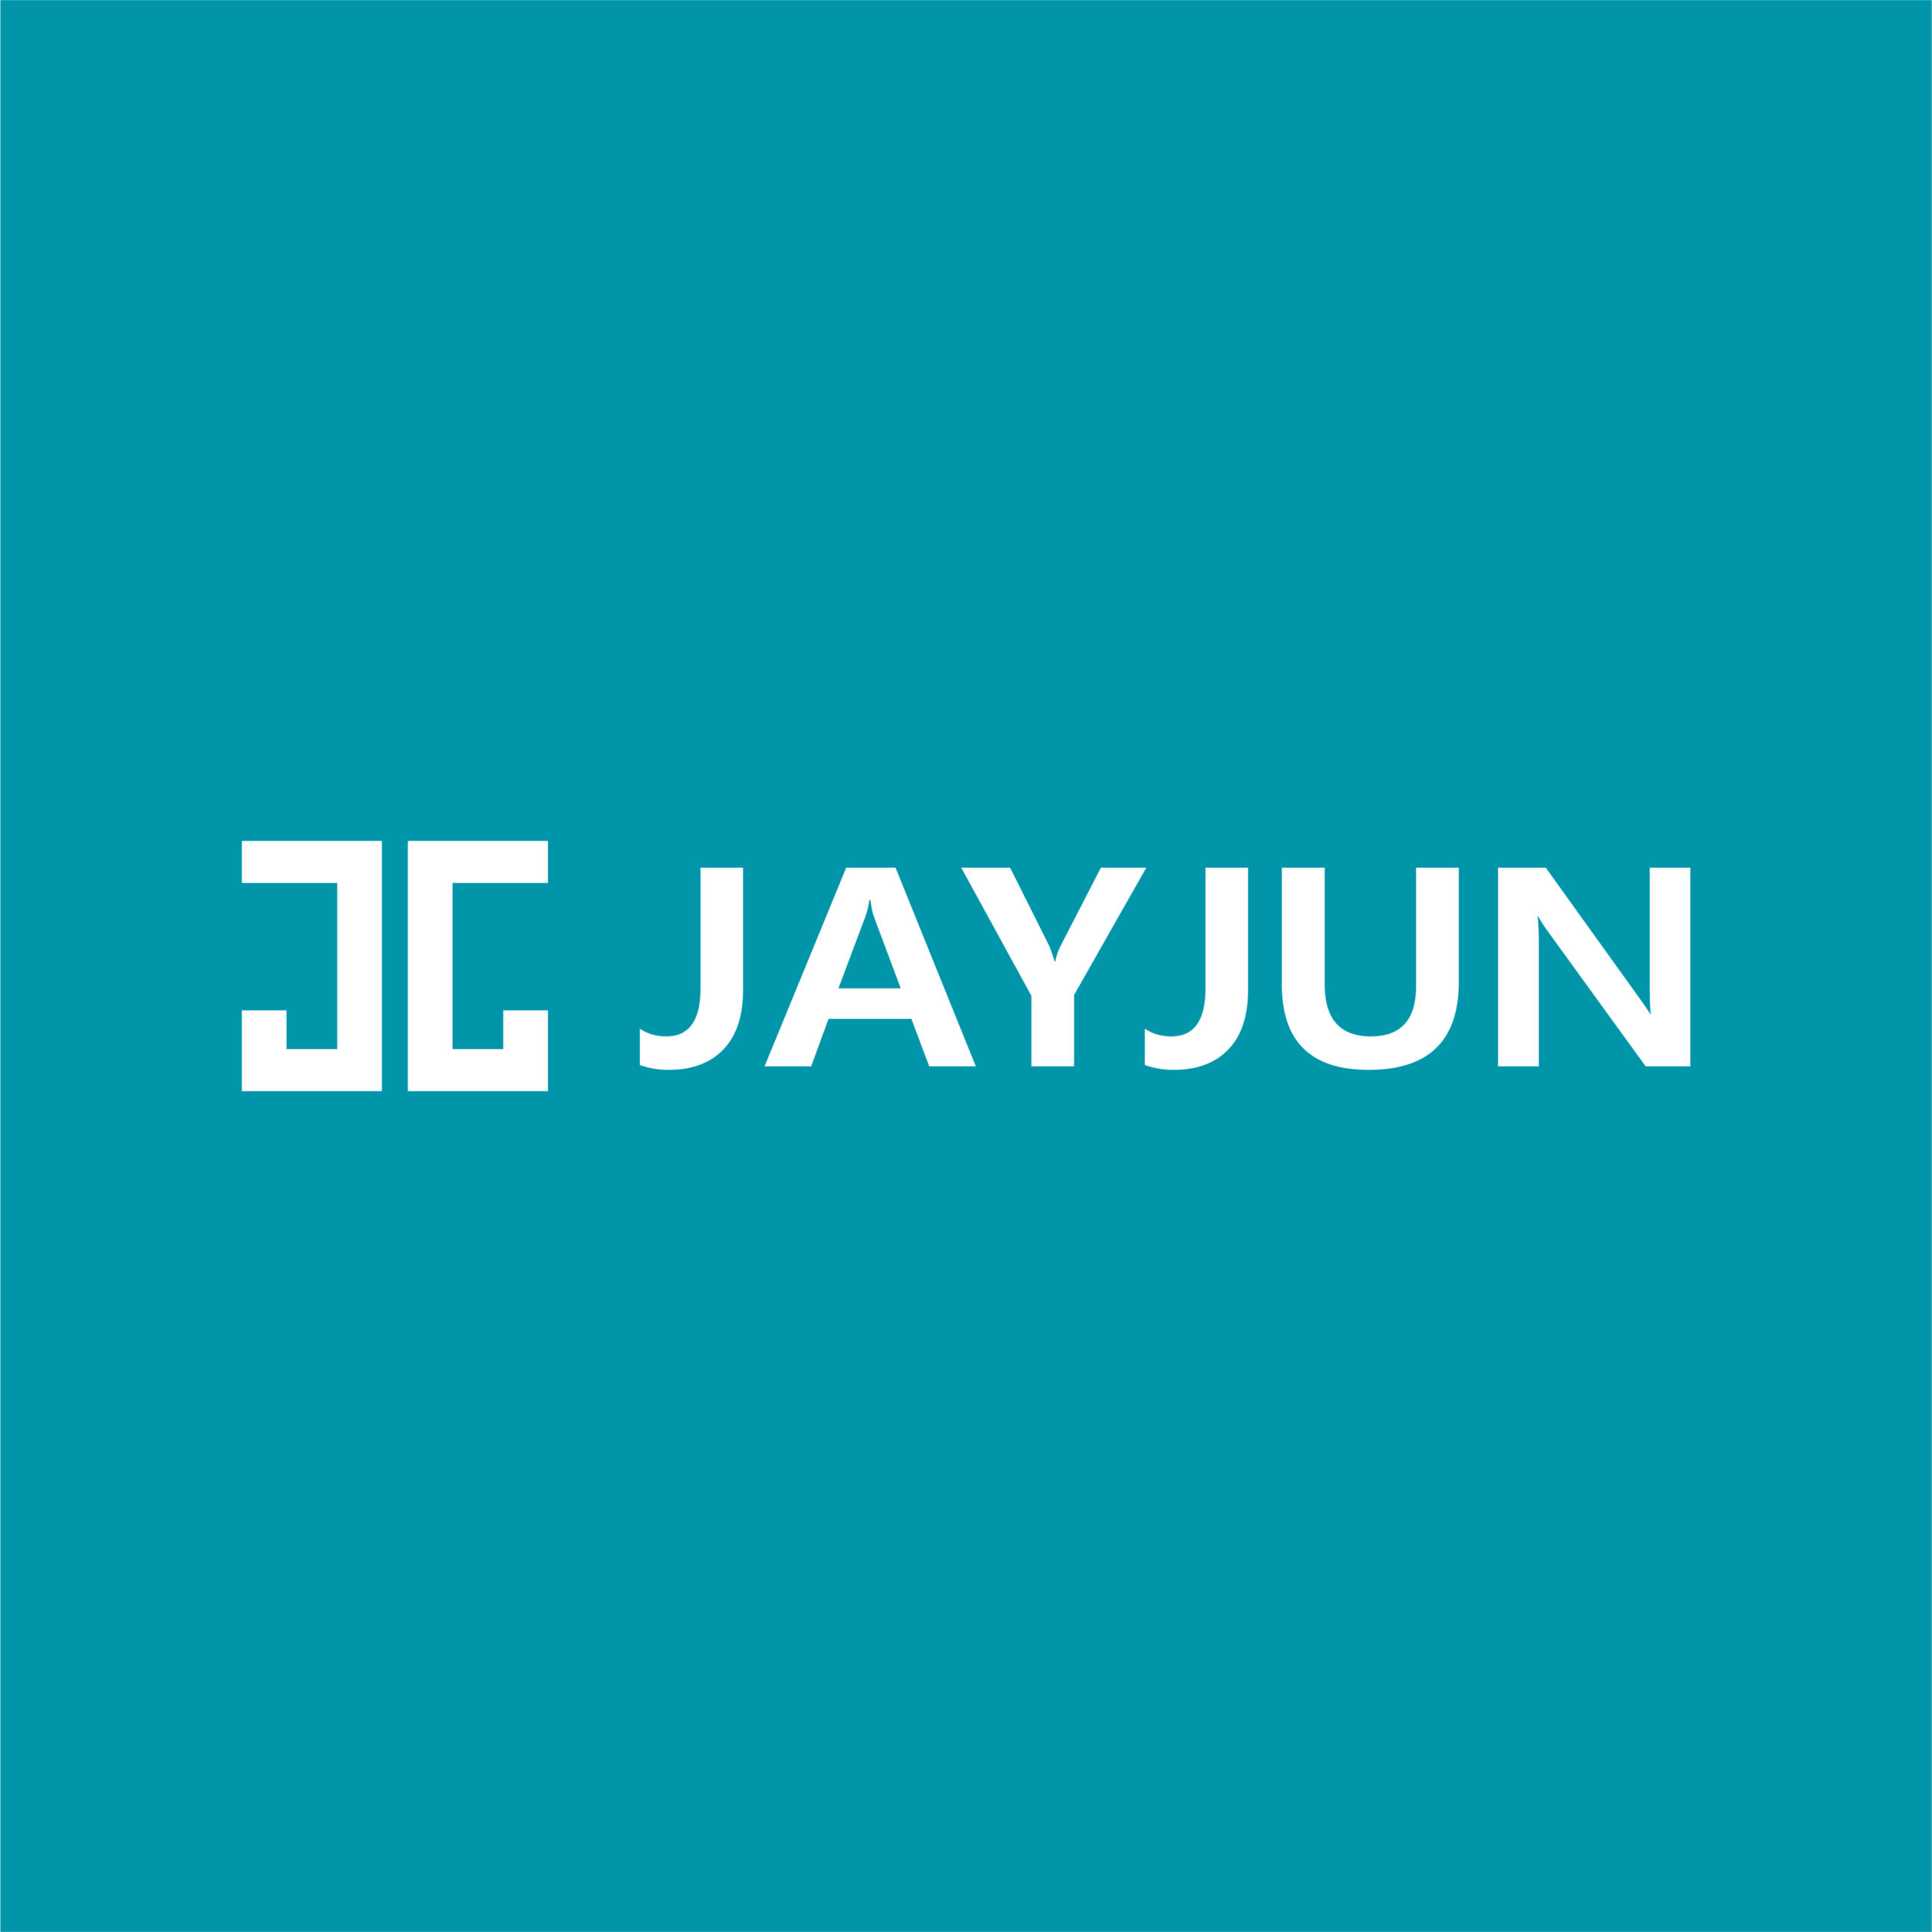 JayJun